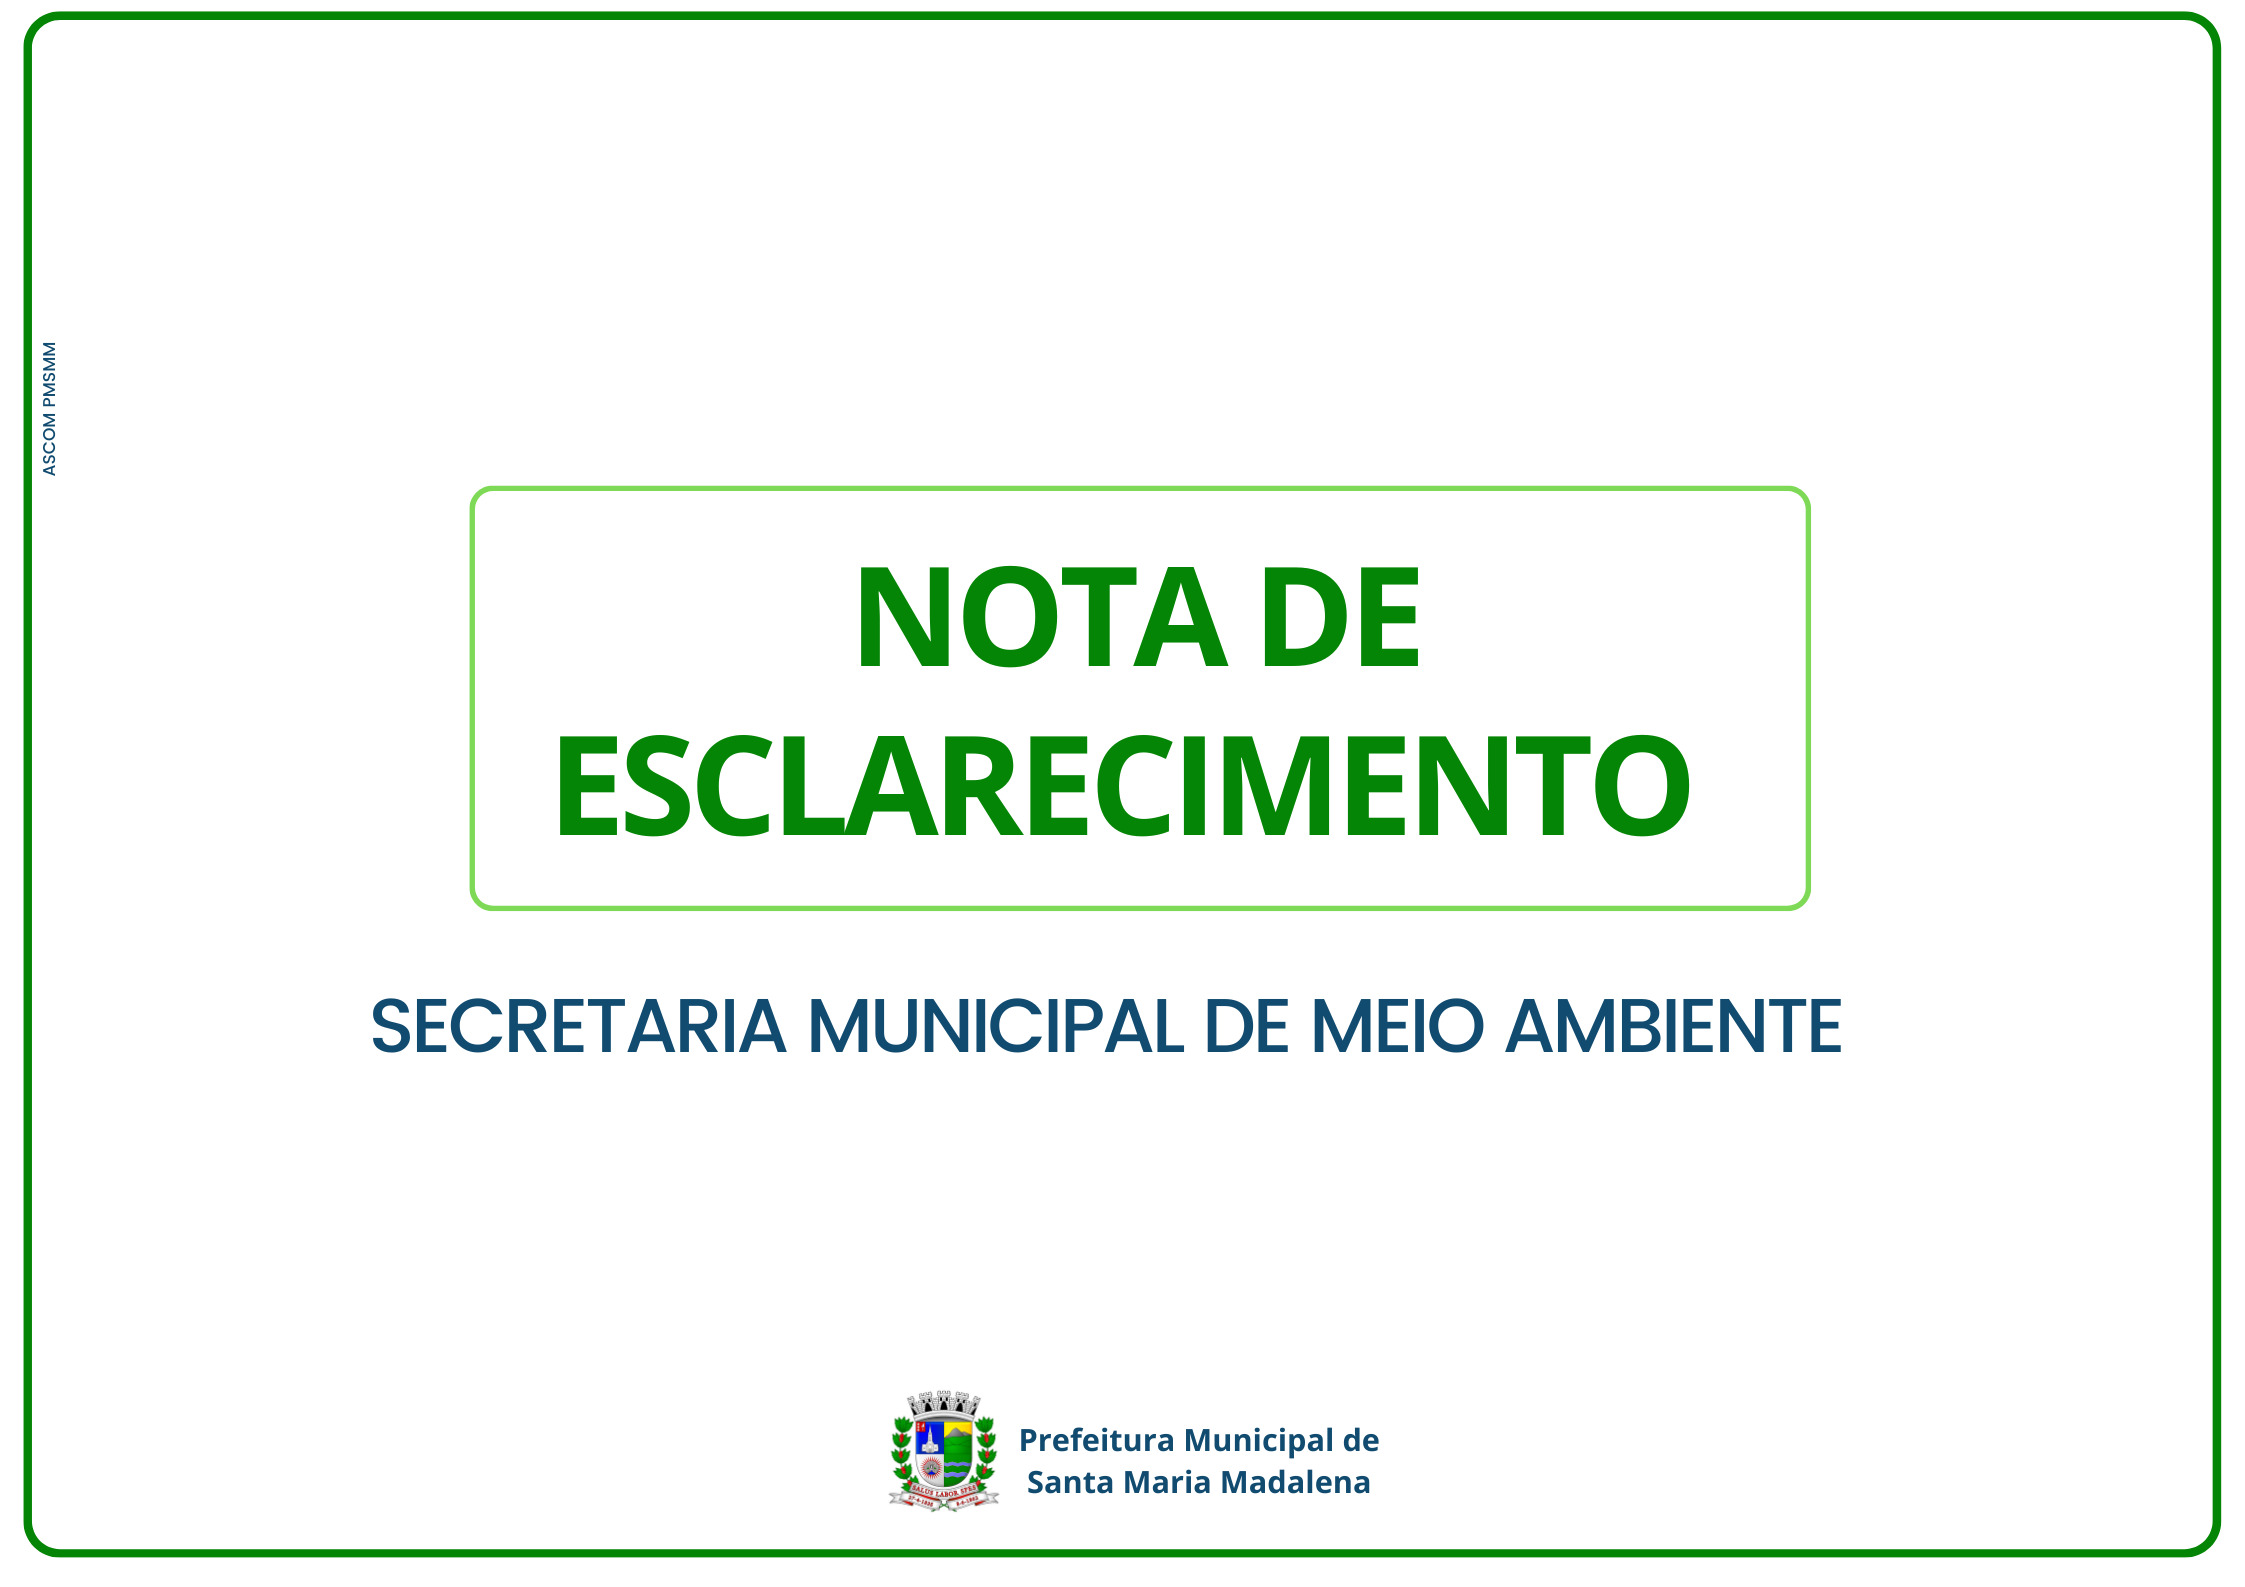 Secretaria de Meio Ambiente divulga esclarecimento sobre obra de implantação do Sistema de Esgotamento Sanitário nos bairros Centro/Itaporanga